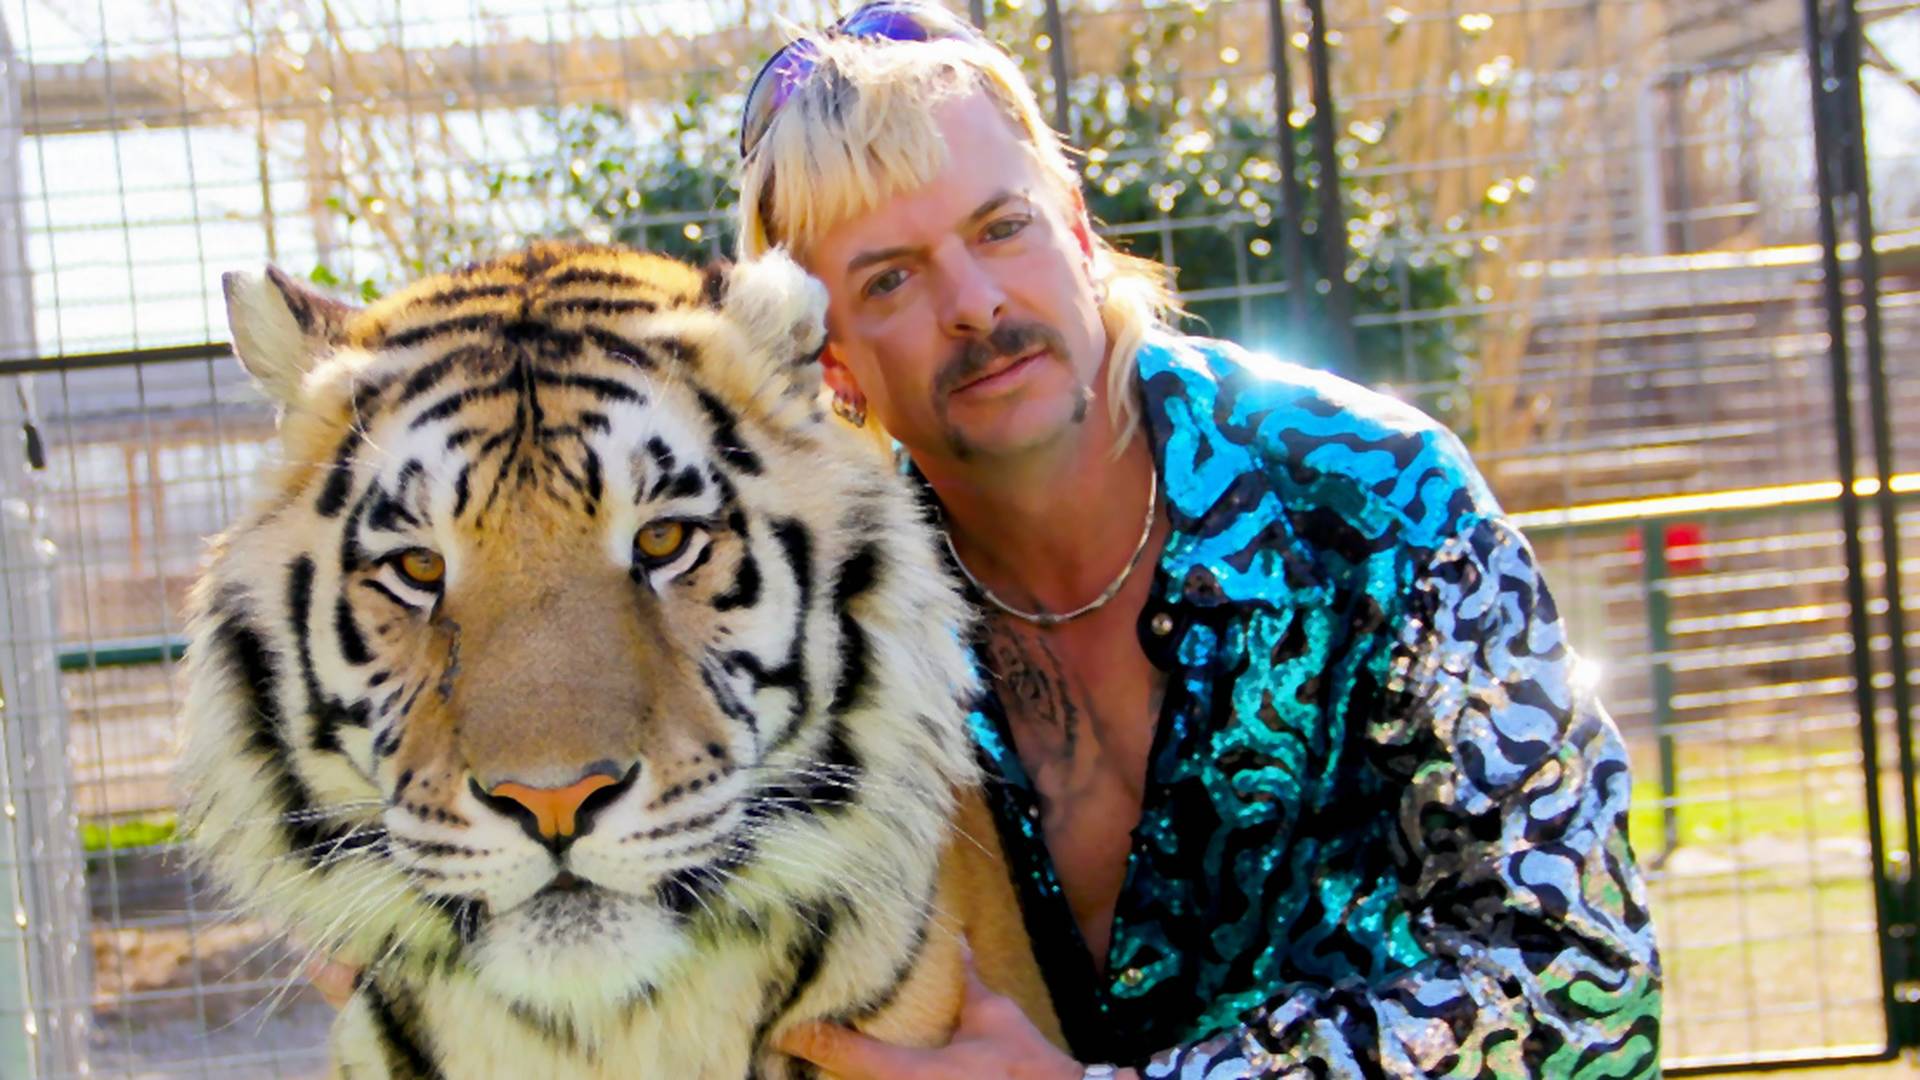 A Tiger King című Netflix sorozatban elhíresült állatkert tigrisei szövetségi védelmet kapnak